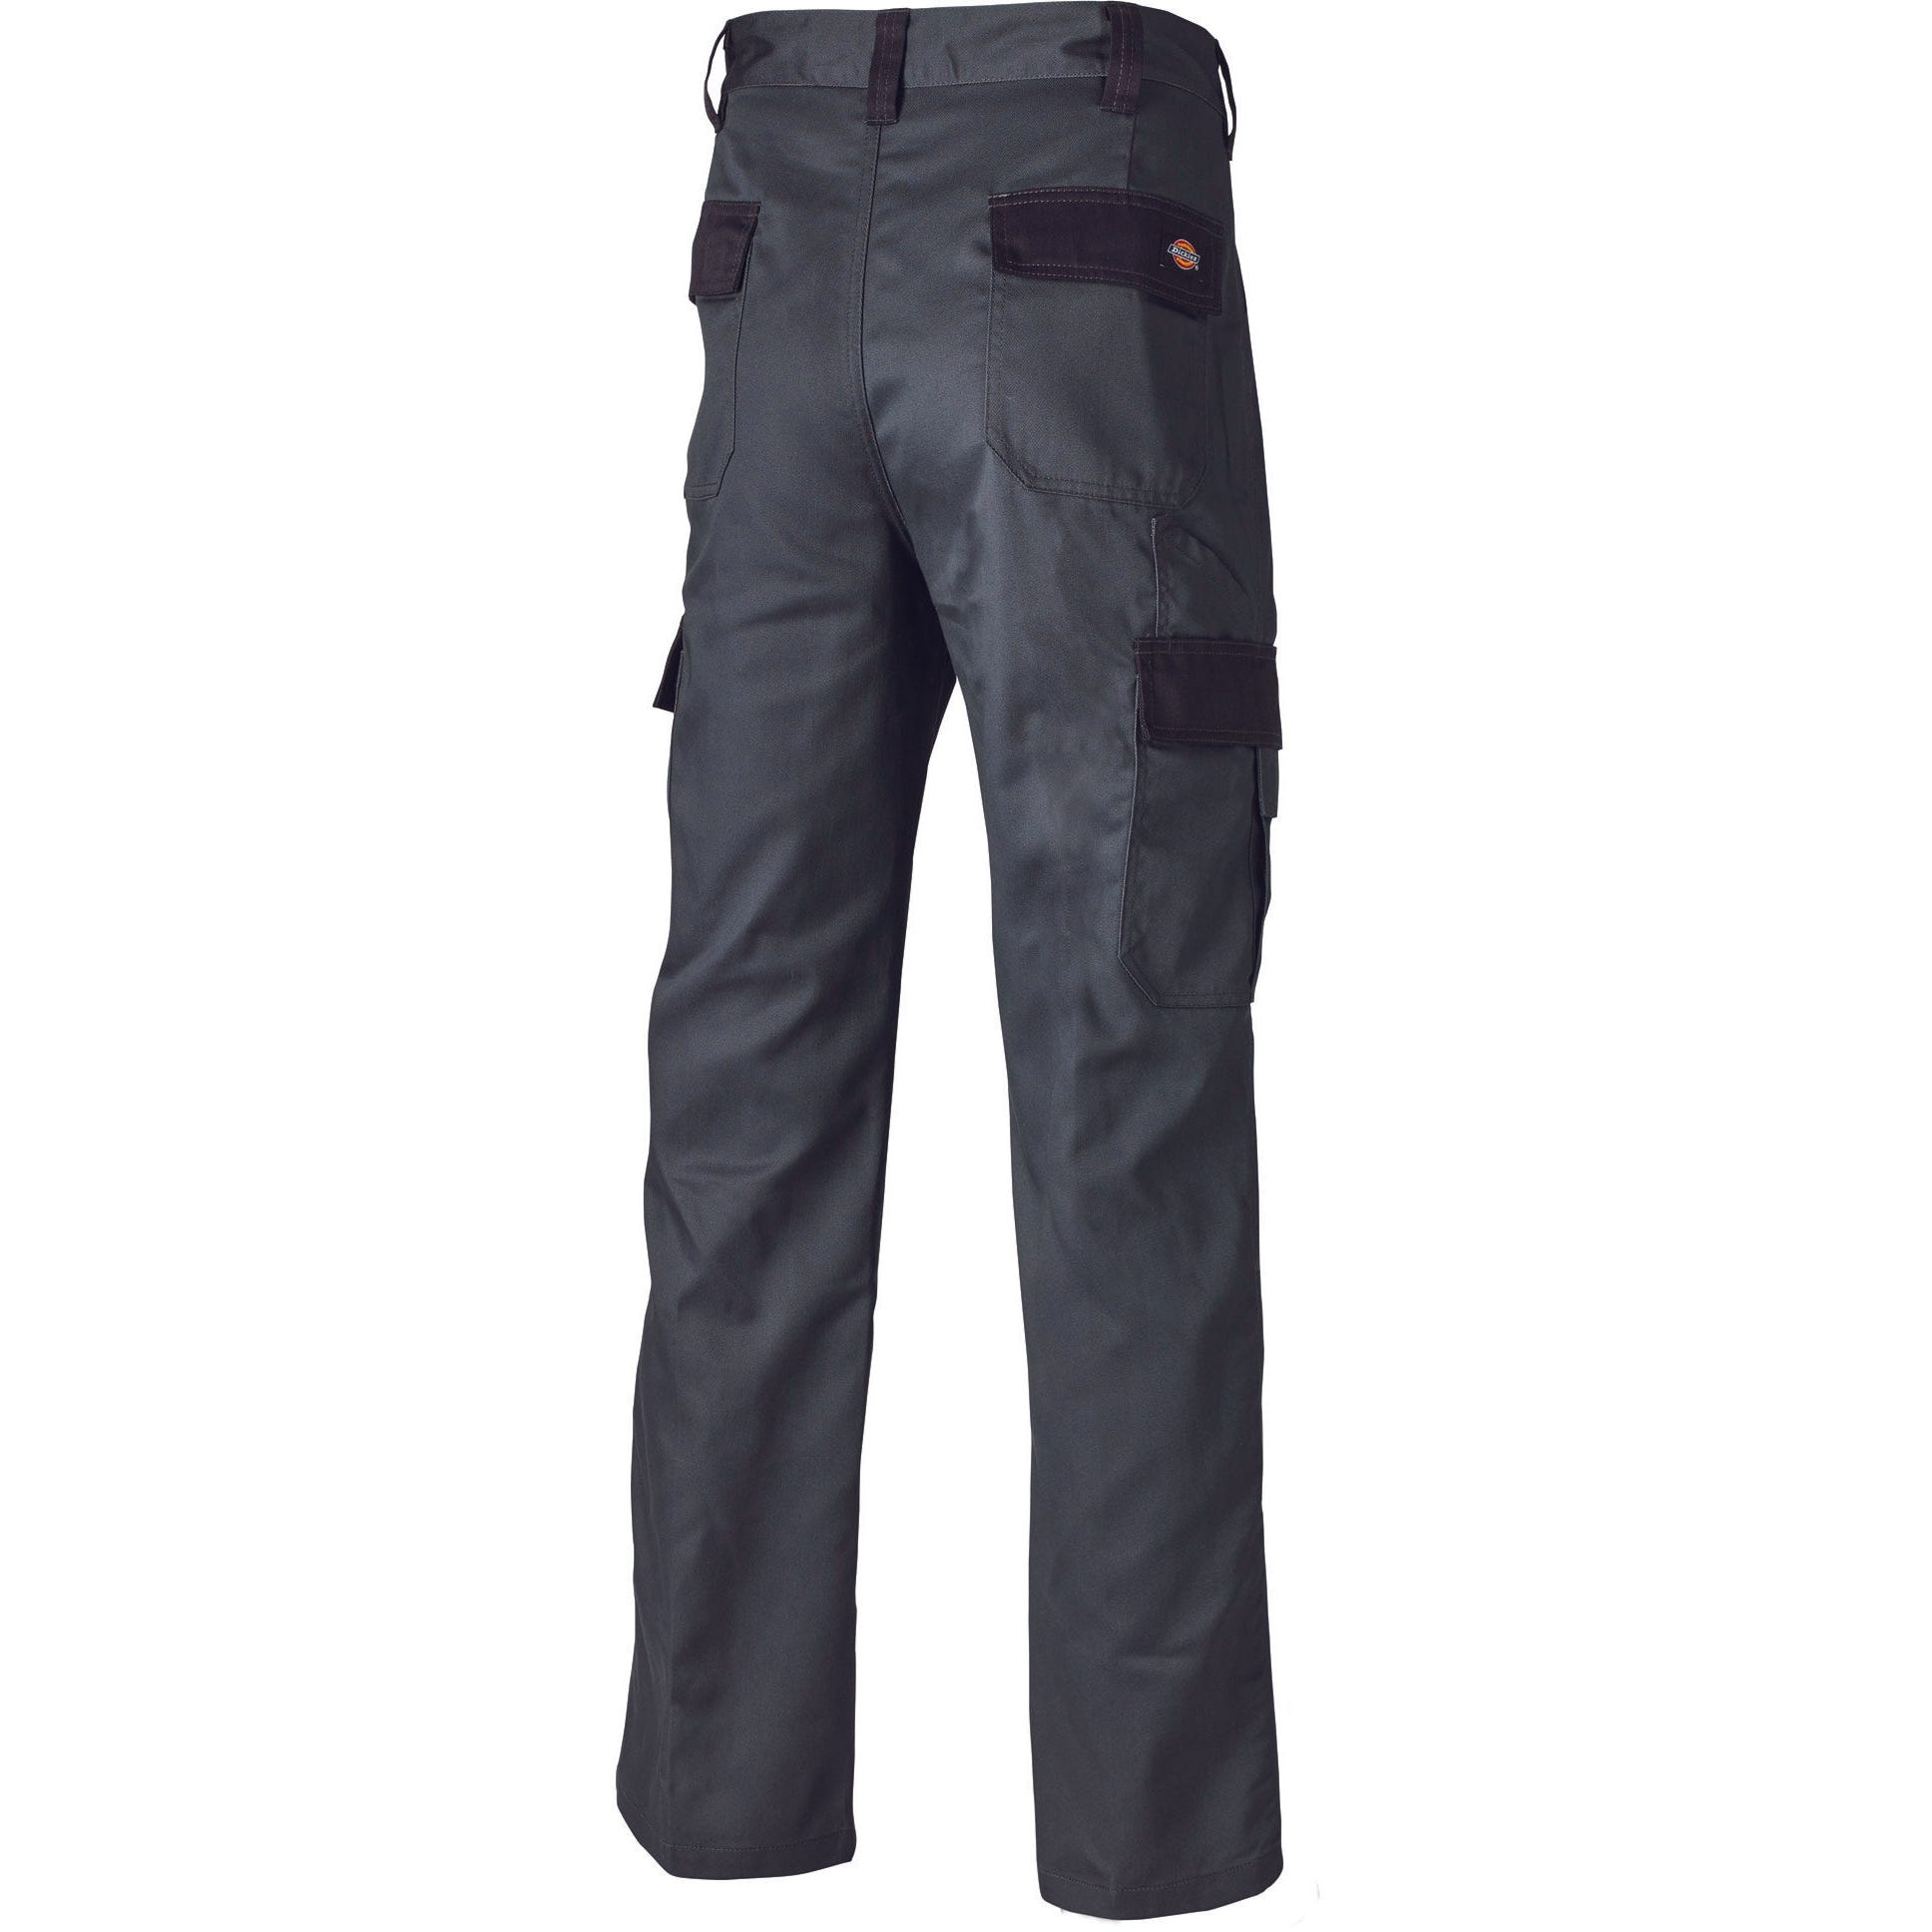 Pantalon Everyday Gris et noir- Dickies - Taille 36 6